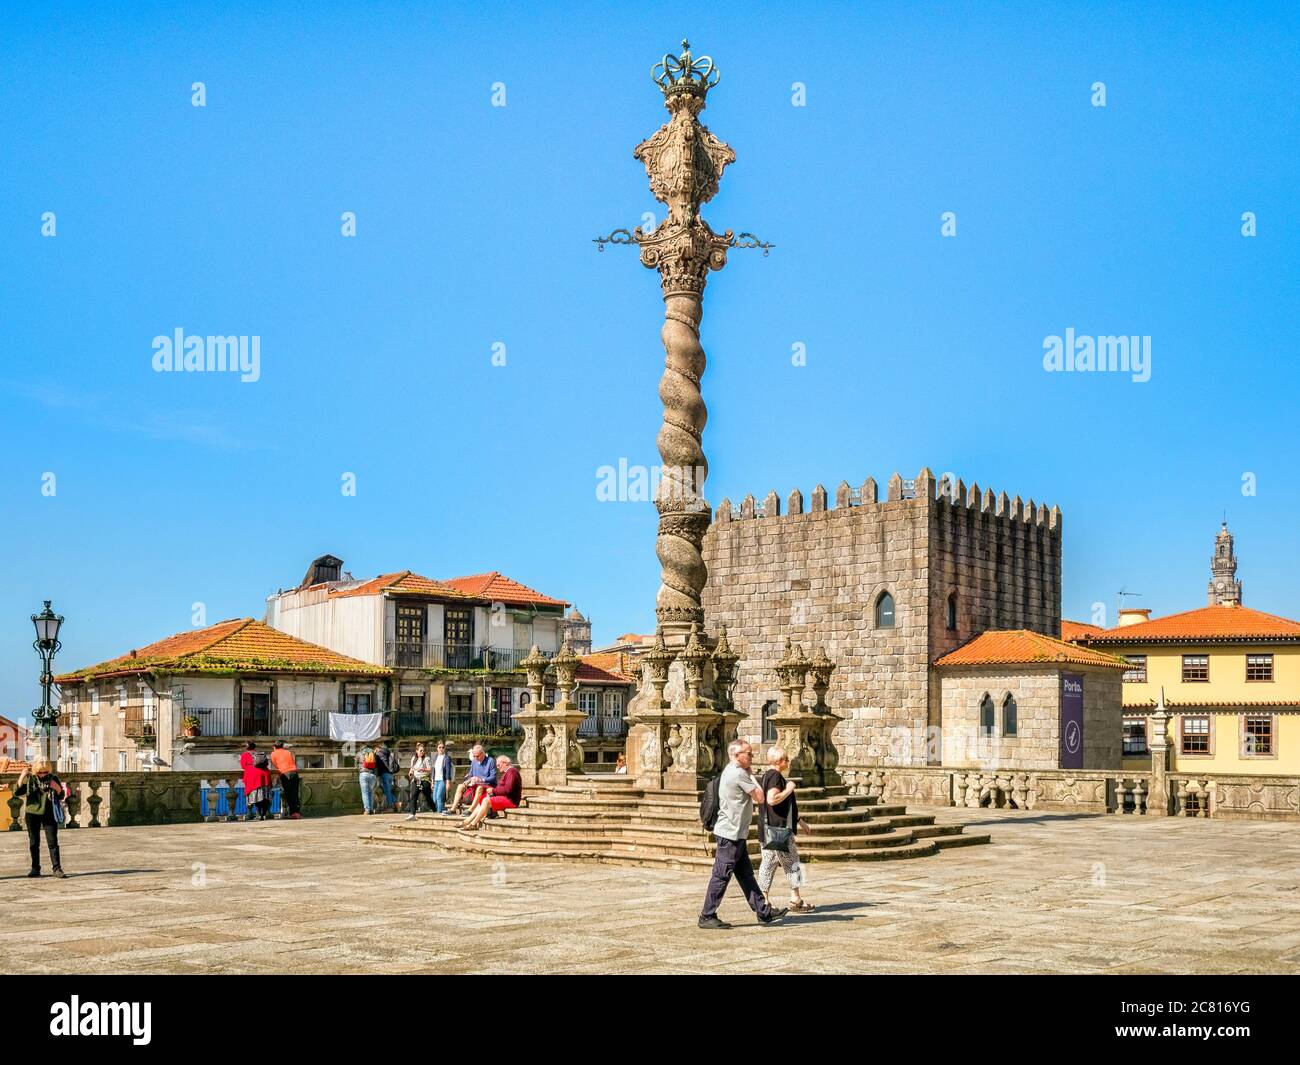 10 marzo 2020: Porto, Portogallo - il Pelourinho o pilastro di Porto, che si trova nella piazza all'estremità ovest della Cattedrale. Foto Stock